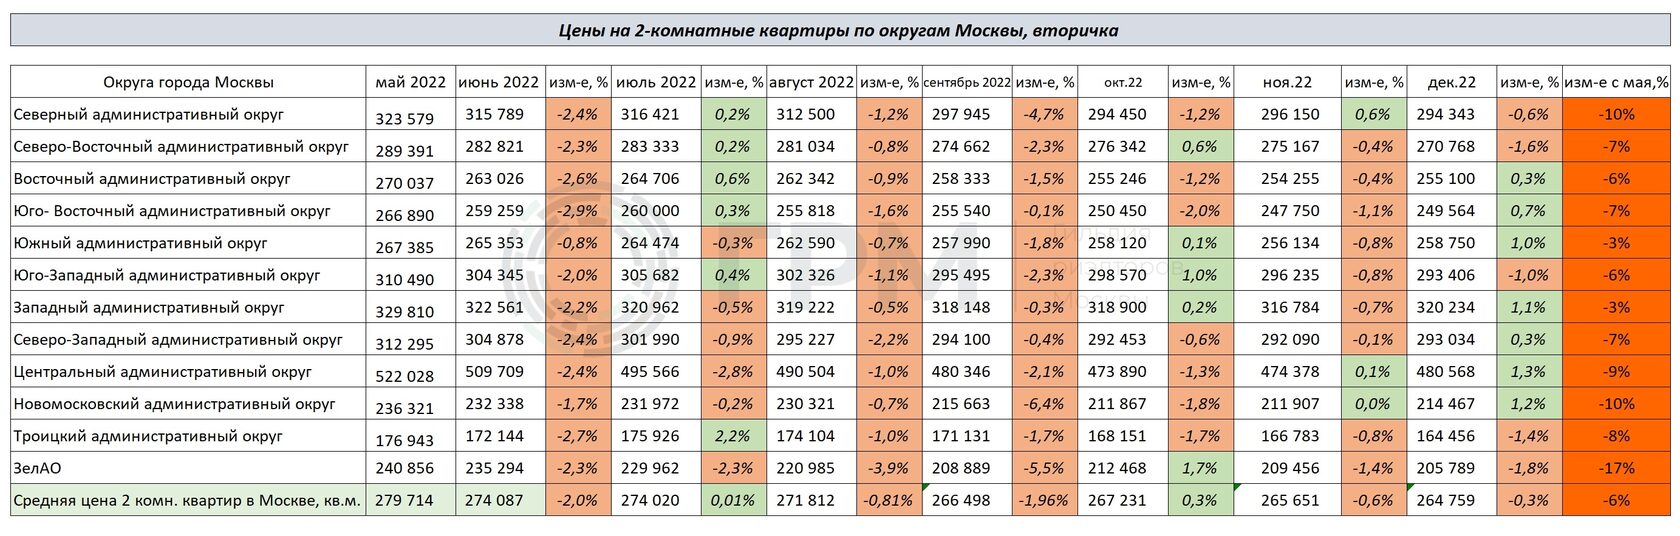 Изменение цен на 2-х комнатные квартиры по округам Москвы с мая по декабрь 2022 года